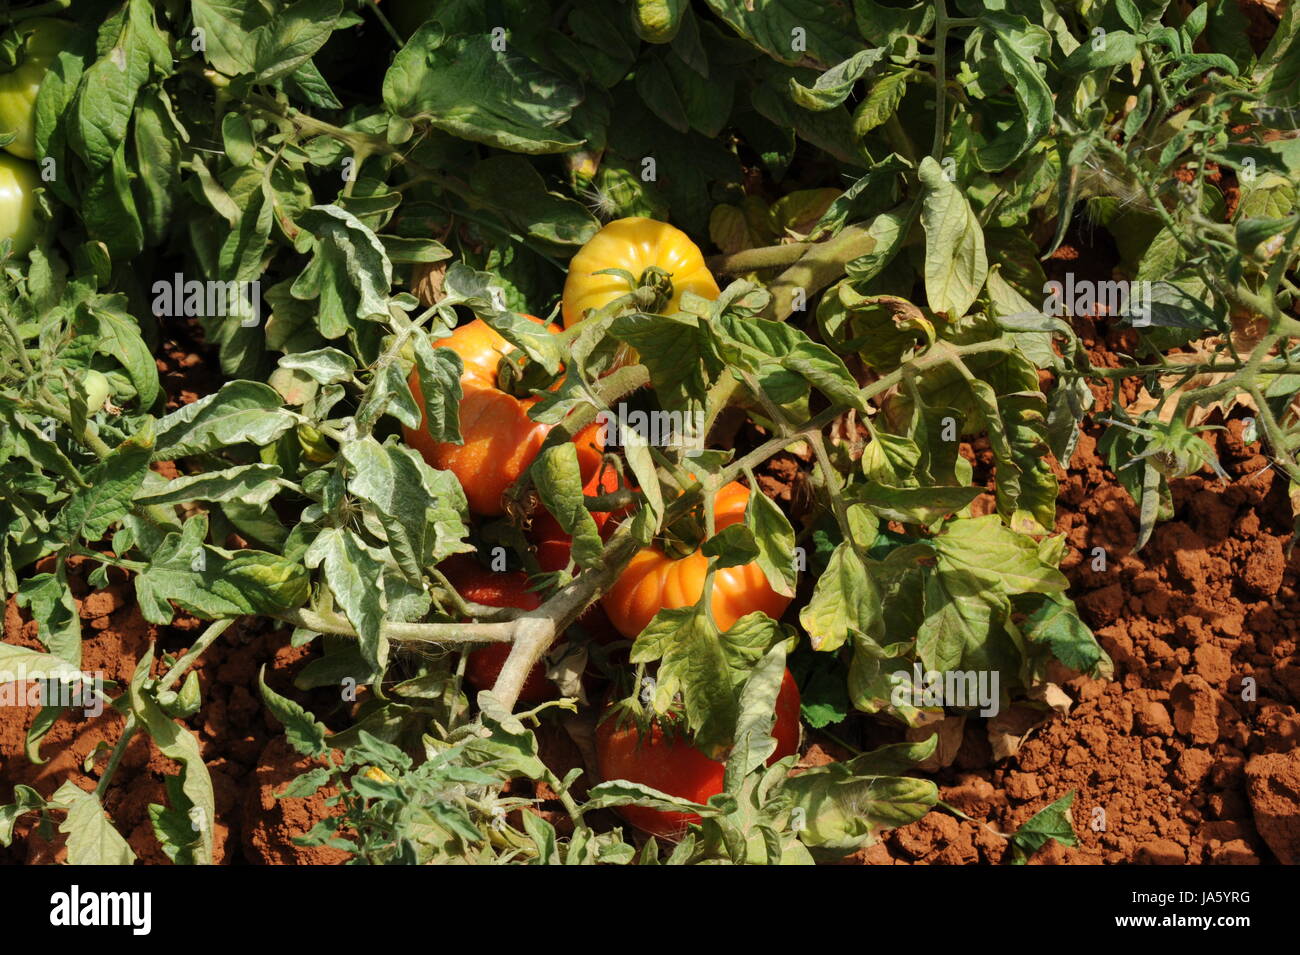 vegetable, tomate solanum lycopersicum, paradeiser seltener paradiesapfel Stock Photo